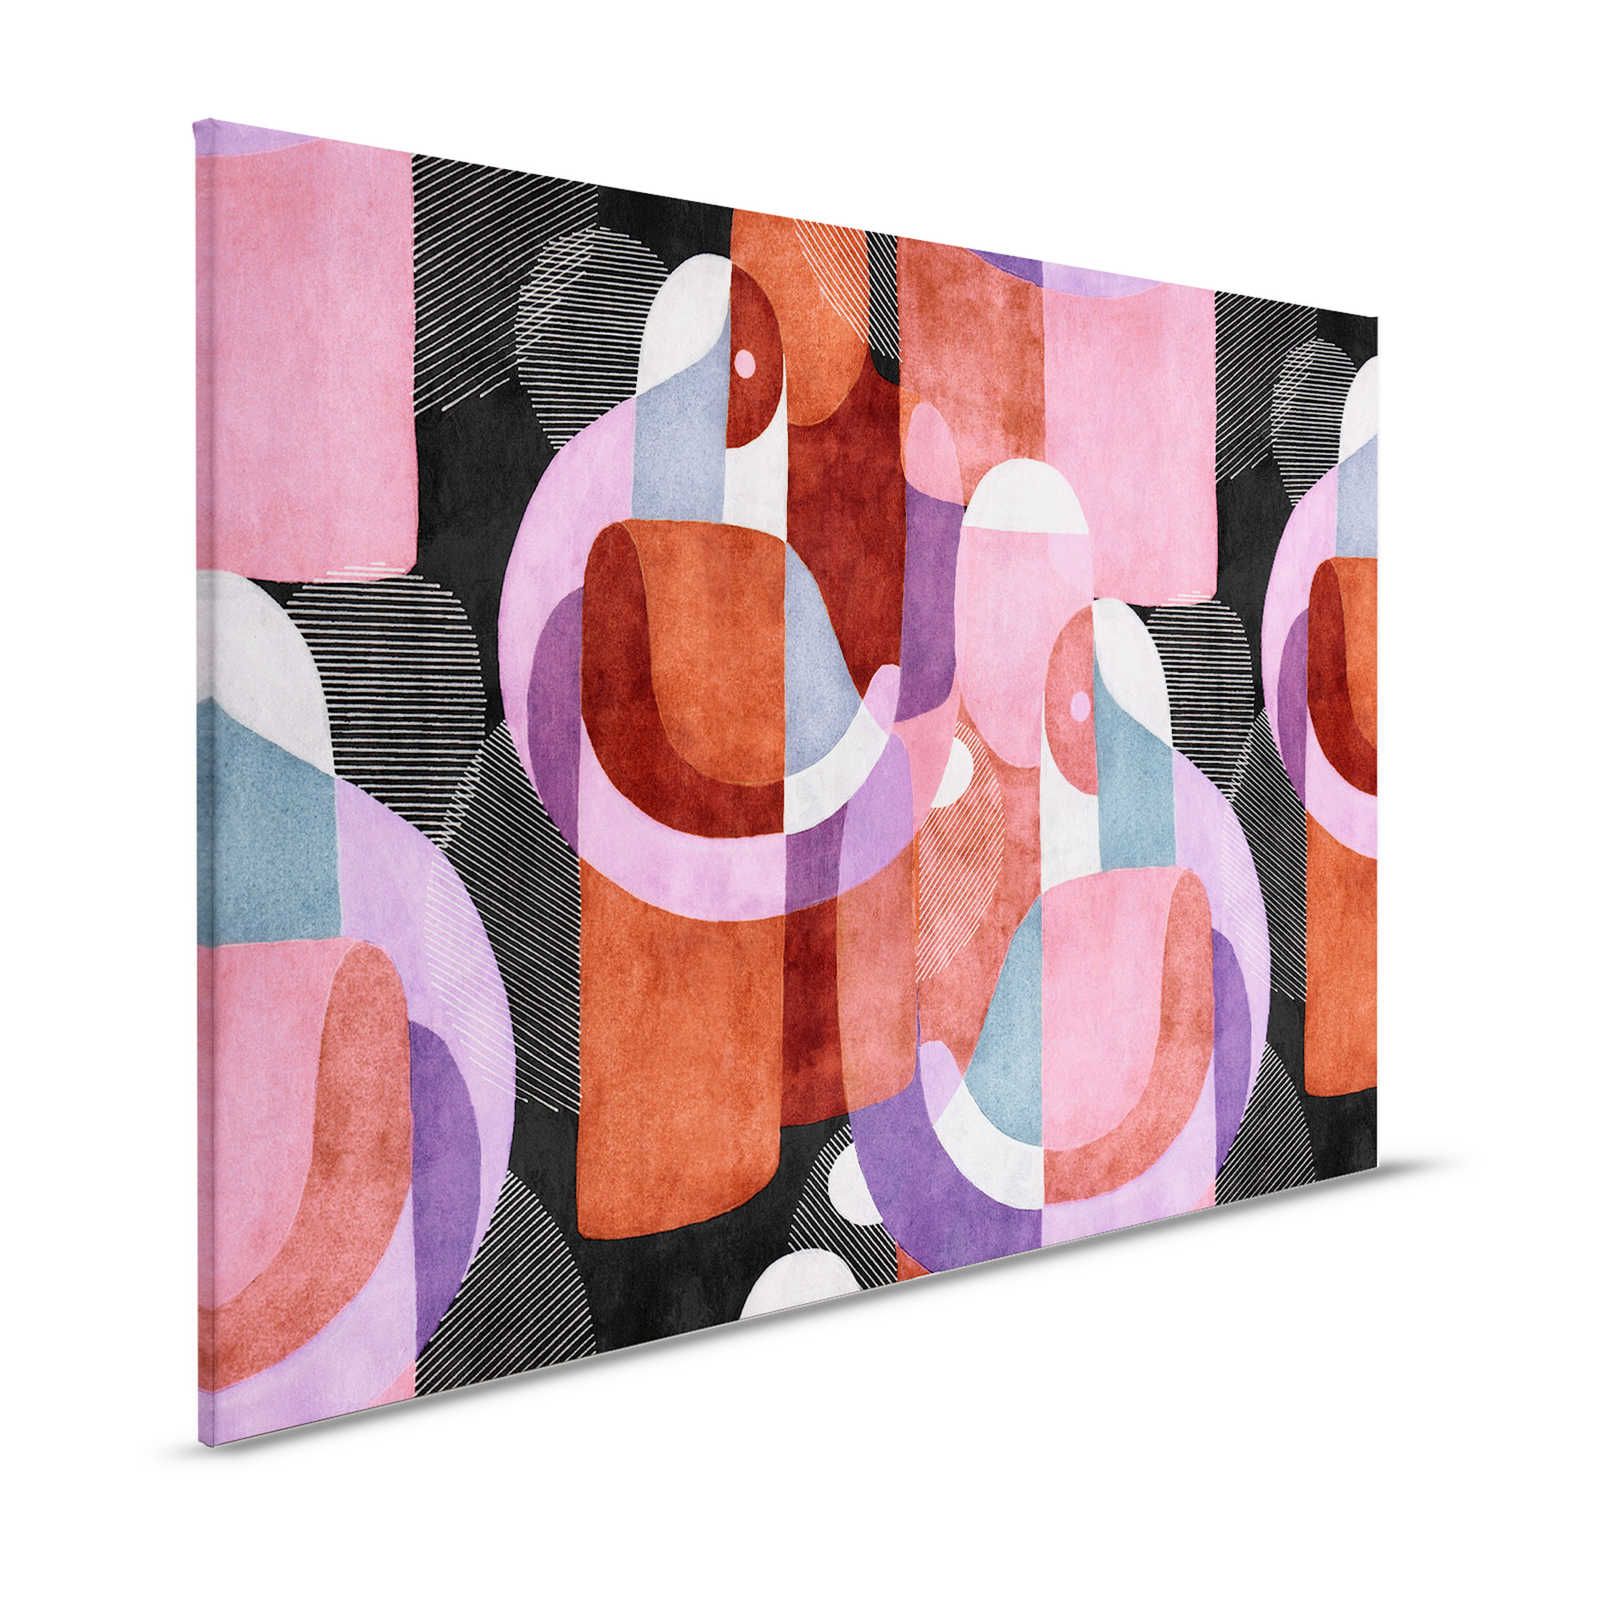 Lugar de encuentro 2 - Cuadro en lienzo diseño etno abstracto en negro y rosa - 1,20 m x 0,80 m
